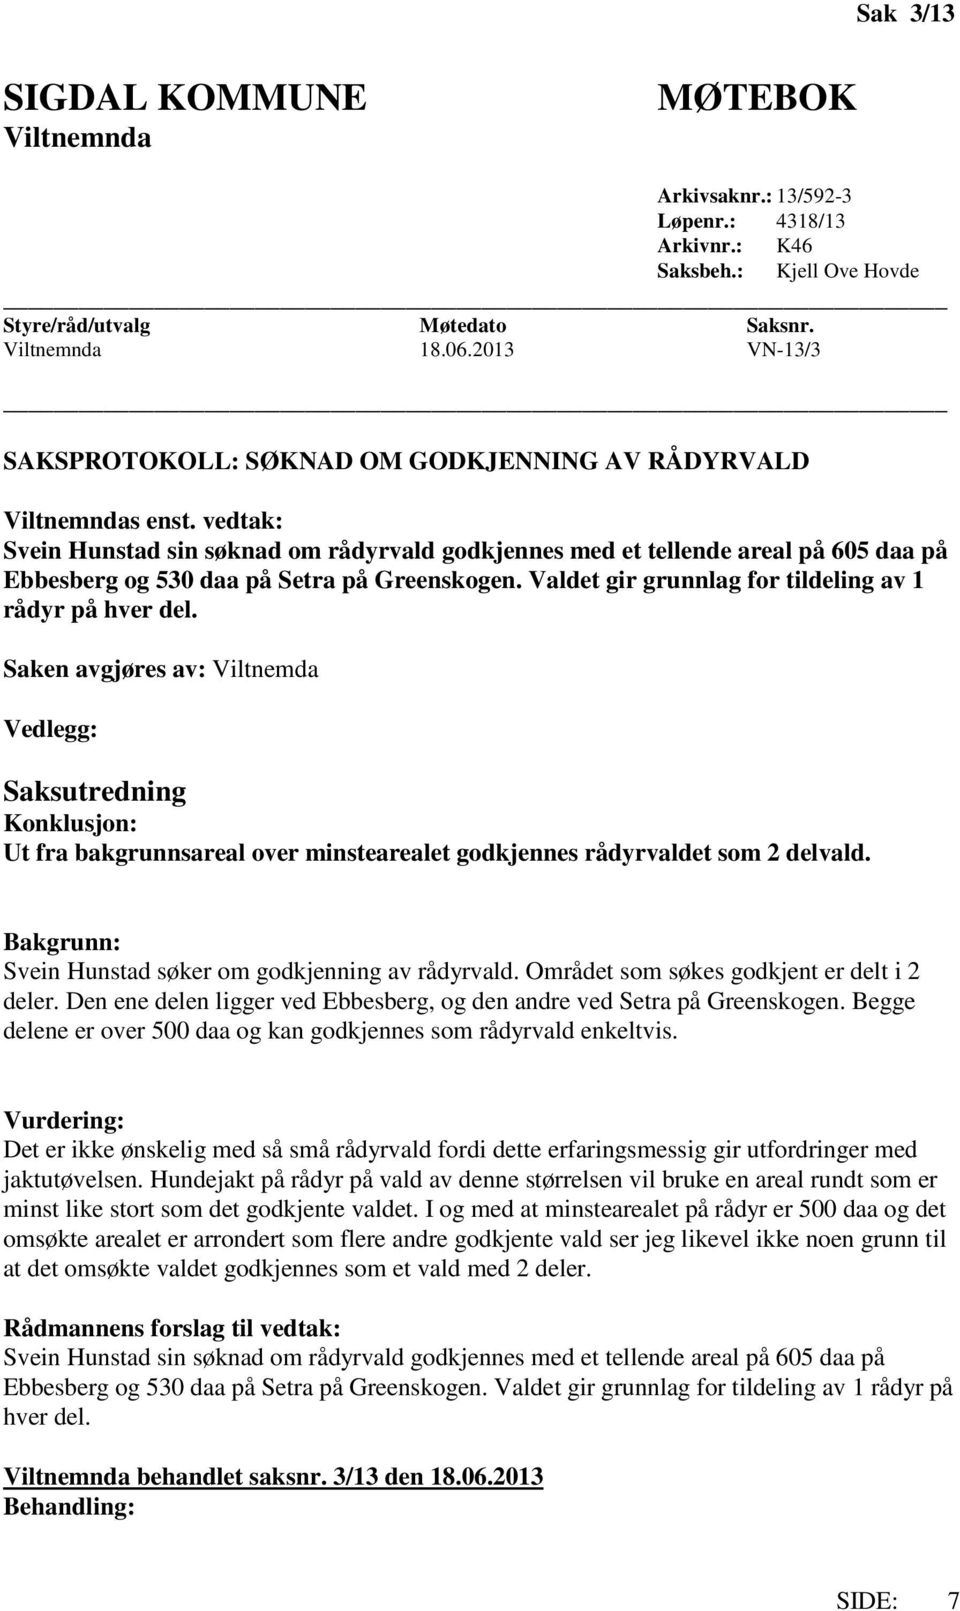 vedtak: Svein Hunstad sin søknad om rådyrvald godkjennes med et tellende areal på 605 daa på Ebbesberg og 530 daa på Setra på Greenskogen. Valdet gir grunnlag for tildeling av 1 rådyr på hver del.